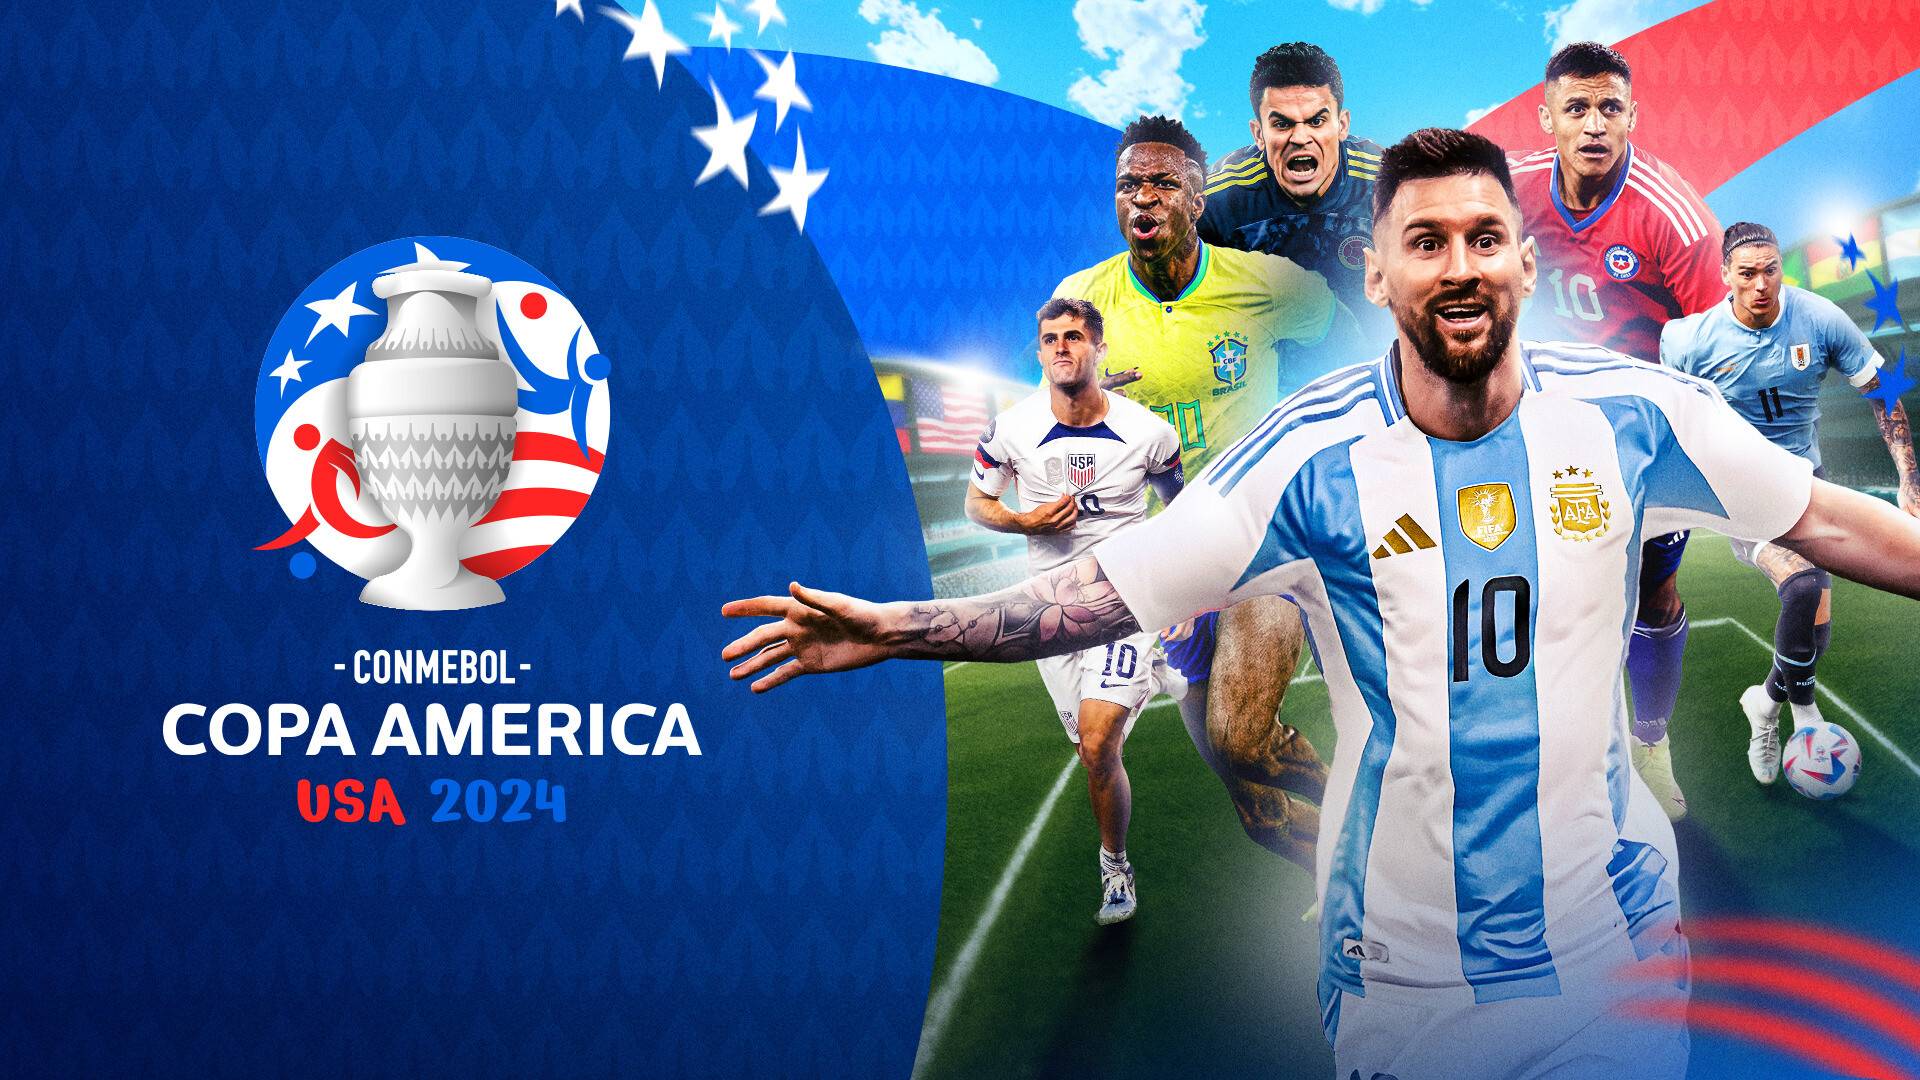 Live Streaming Chile vs Argentina CONMEBOL Copa America USA 2024 26